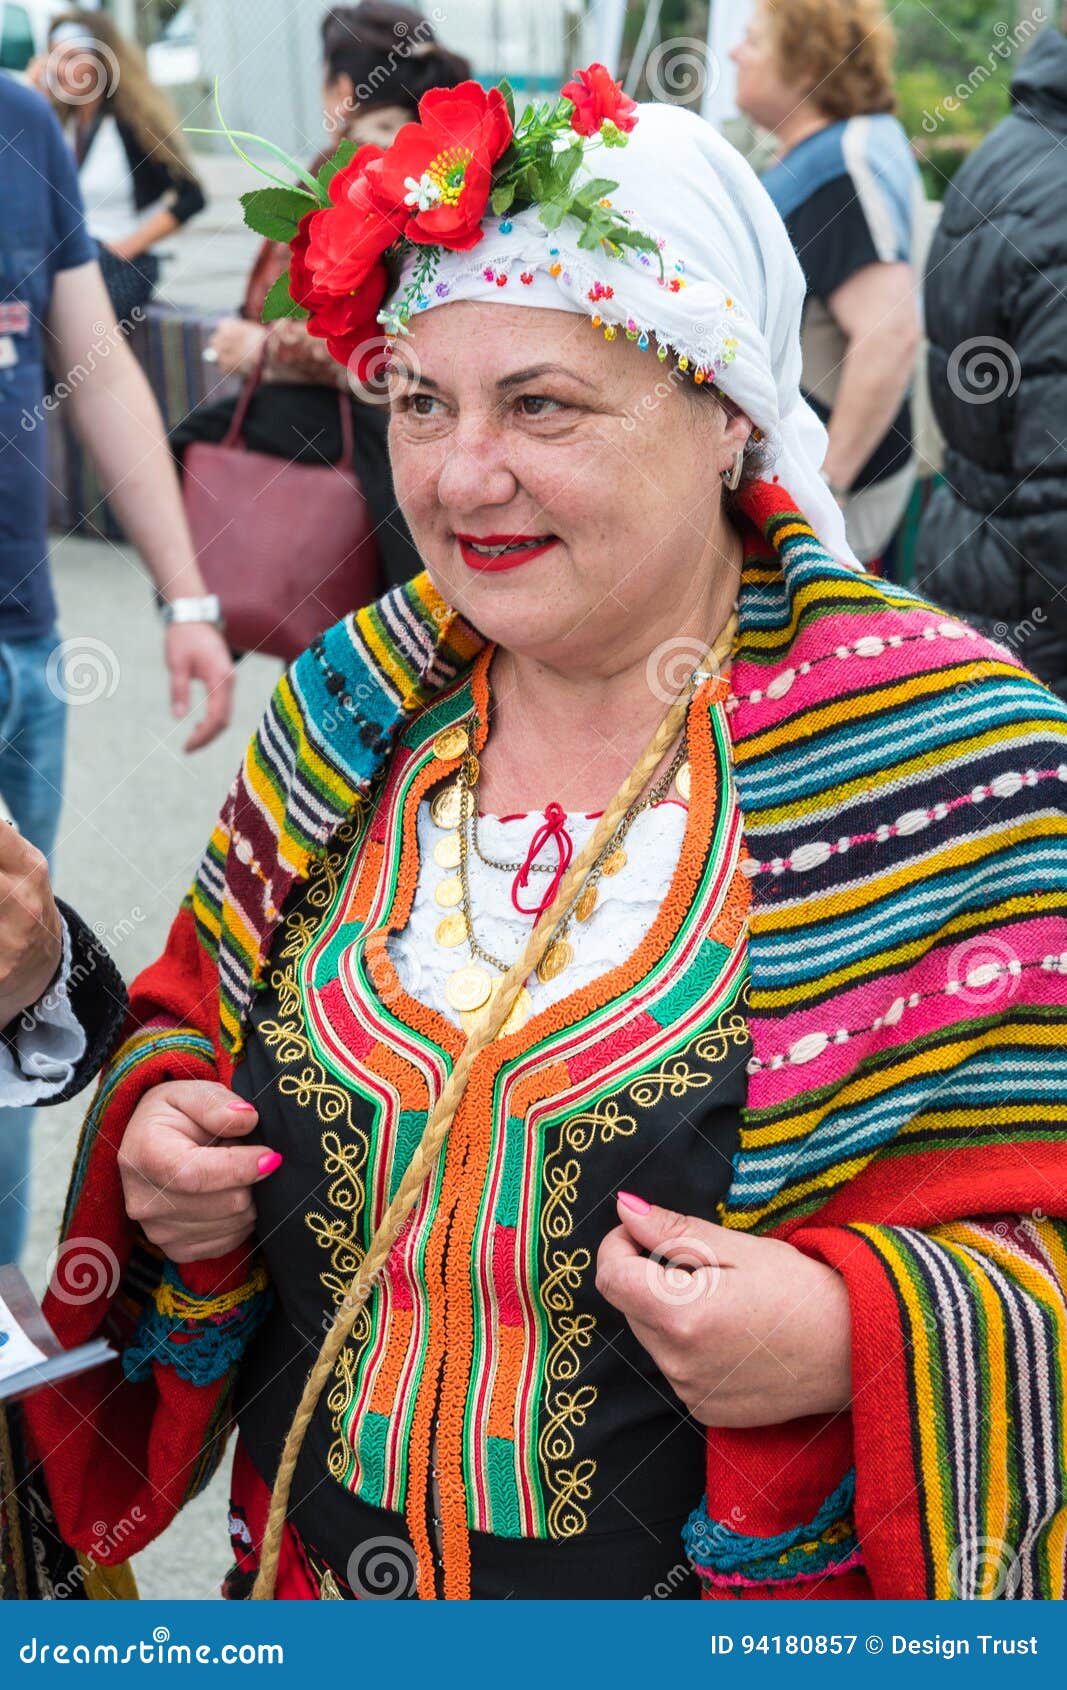 La participation de la Bulgarie à l’occupation de la Grèce  Femme-dans-le-costume-national-sur-des-jeux-de-nestinarski-dans-le-village-des-bulgares-bulgarie-94180857